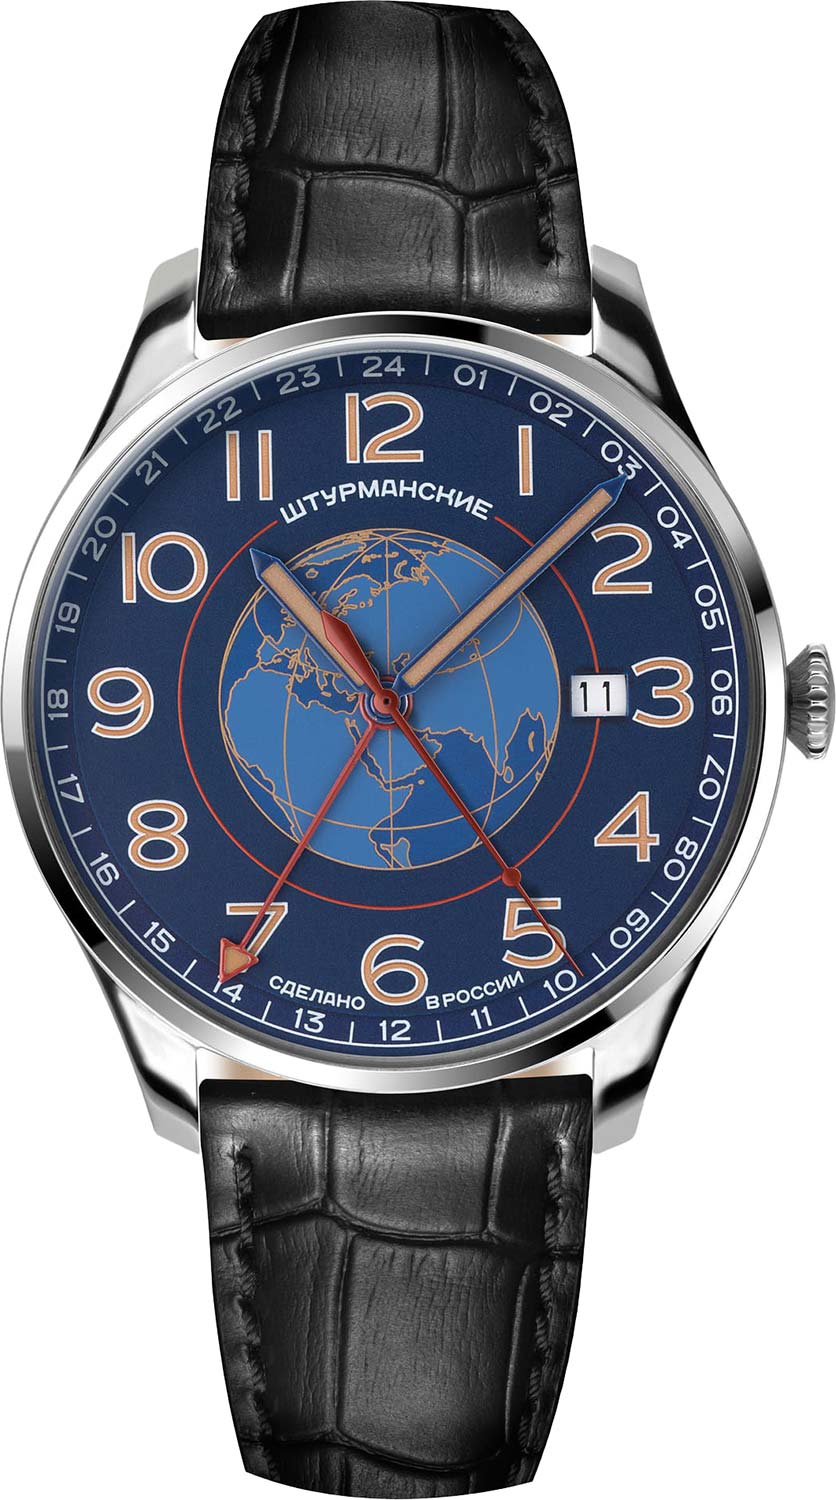 Российские наручные часы Штурманские 51524-1071662